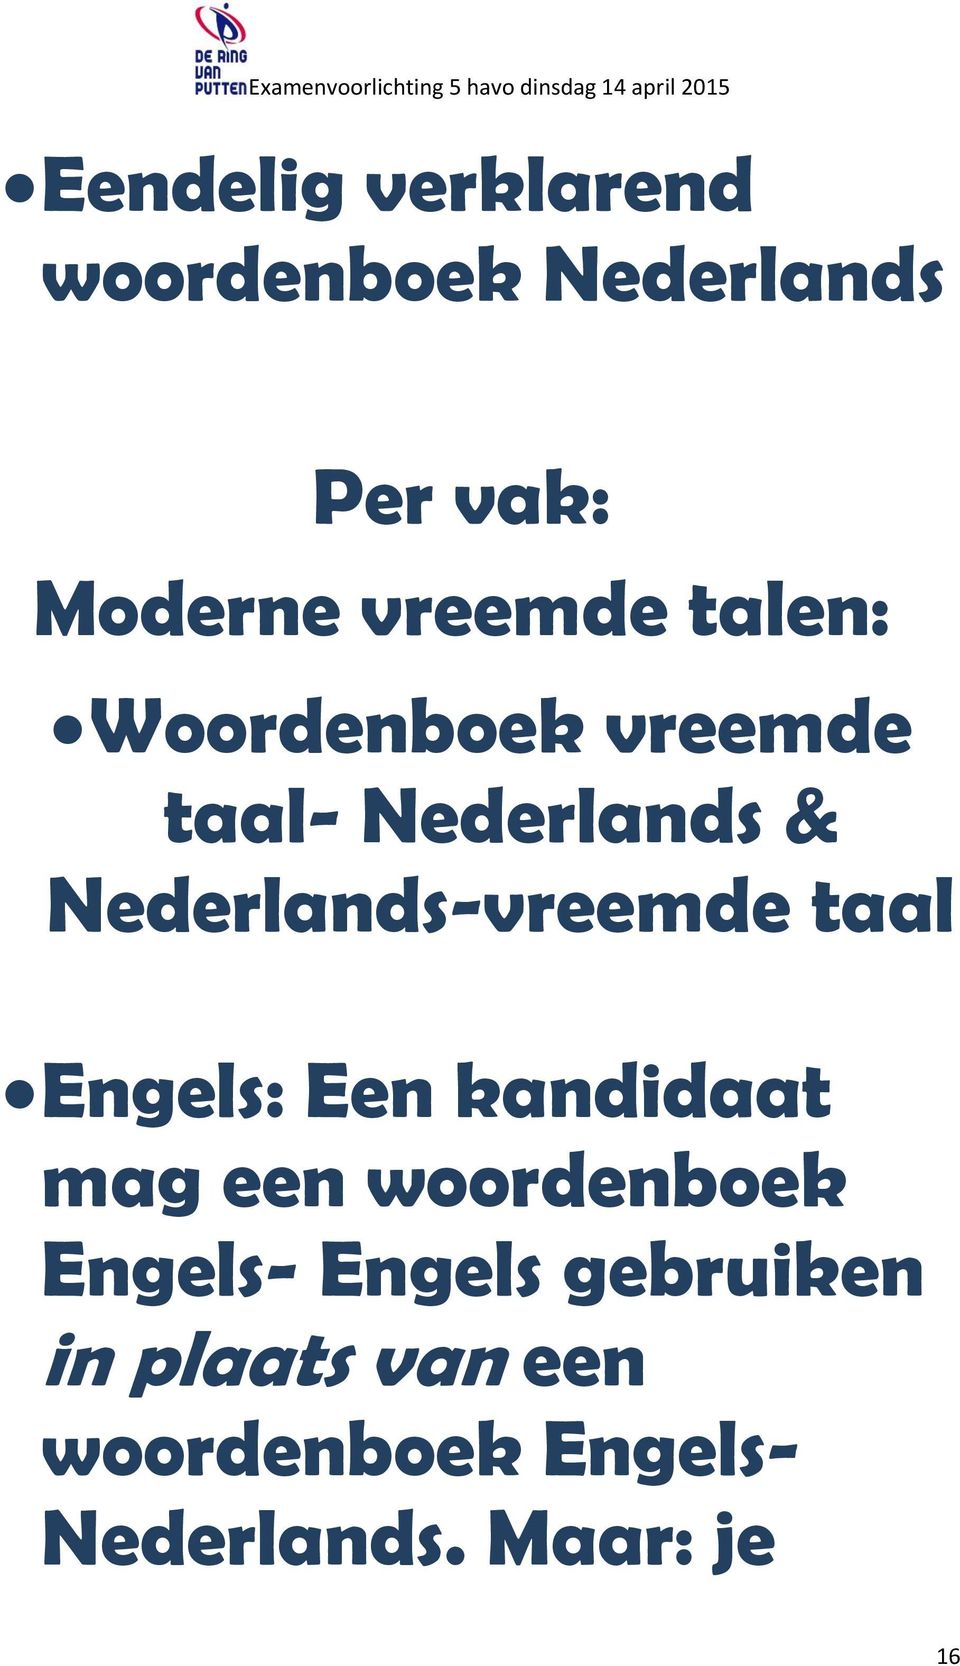 Nederlands-vreemde taal Engels: Een kandidaat mag een woordenboek